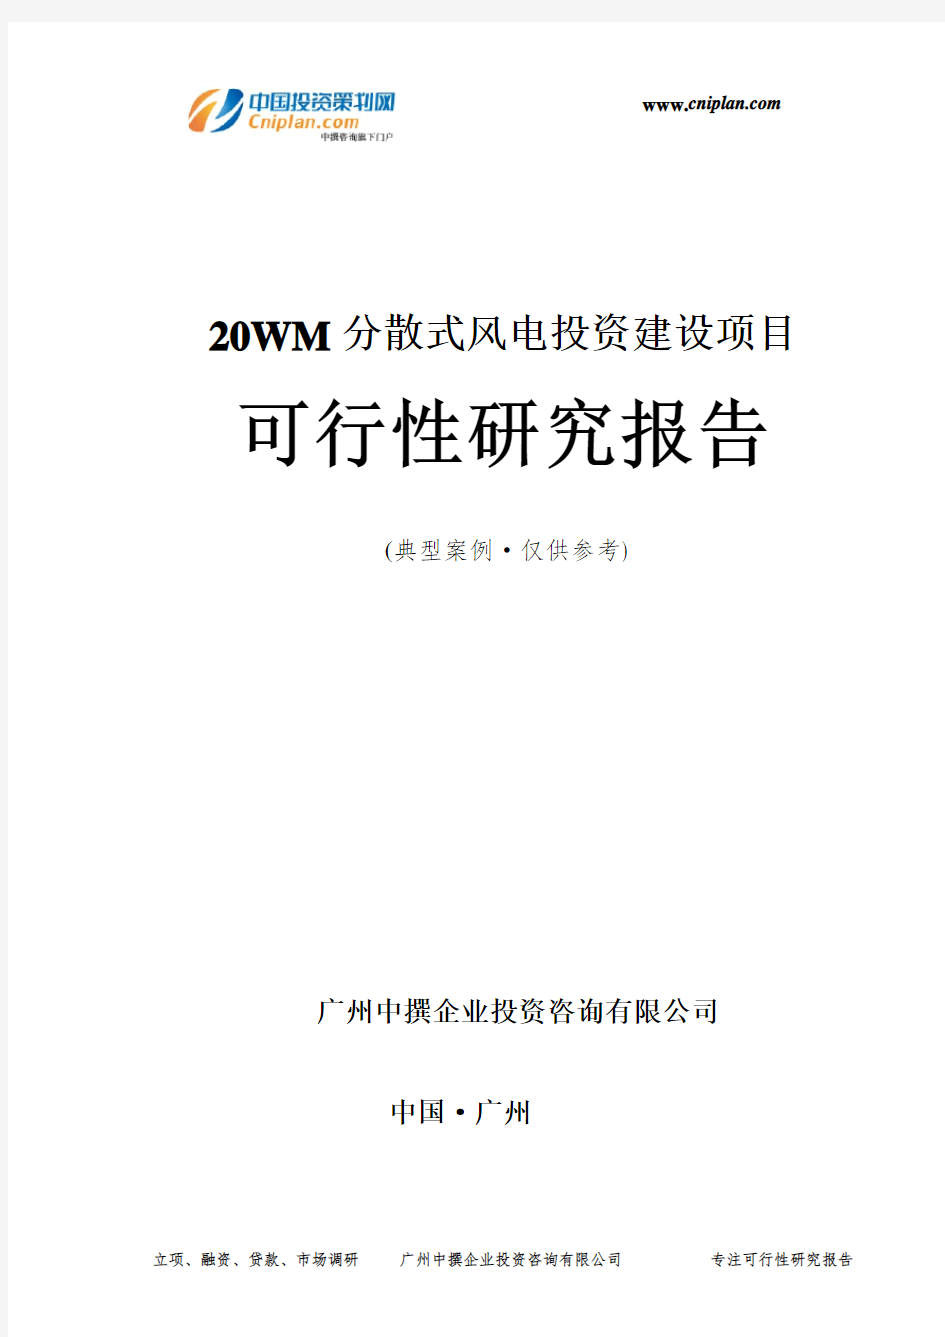 20WM分散式风电投资建设项目可行性研究报告-广州中撰咨询